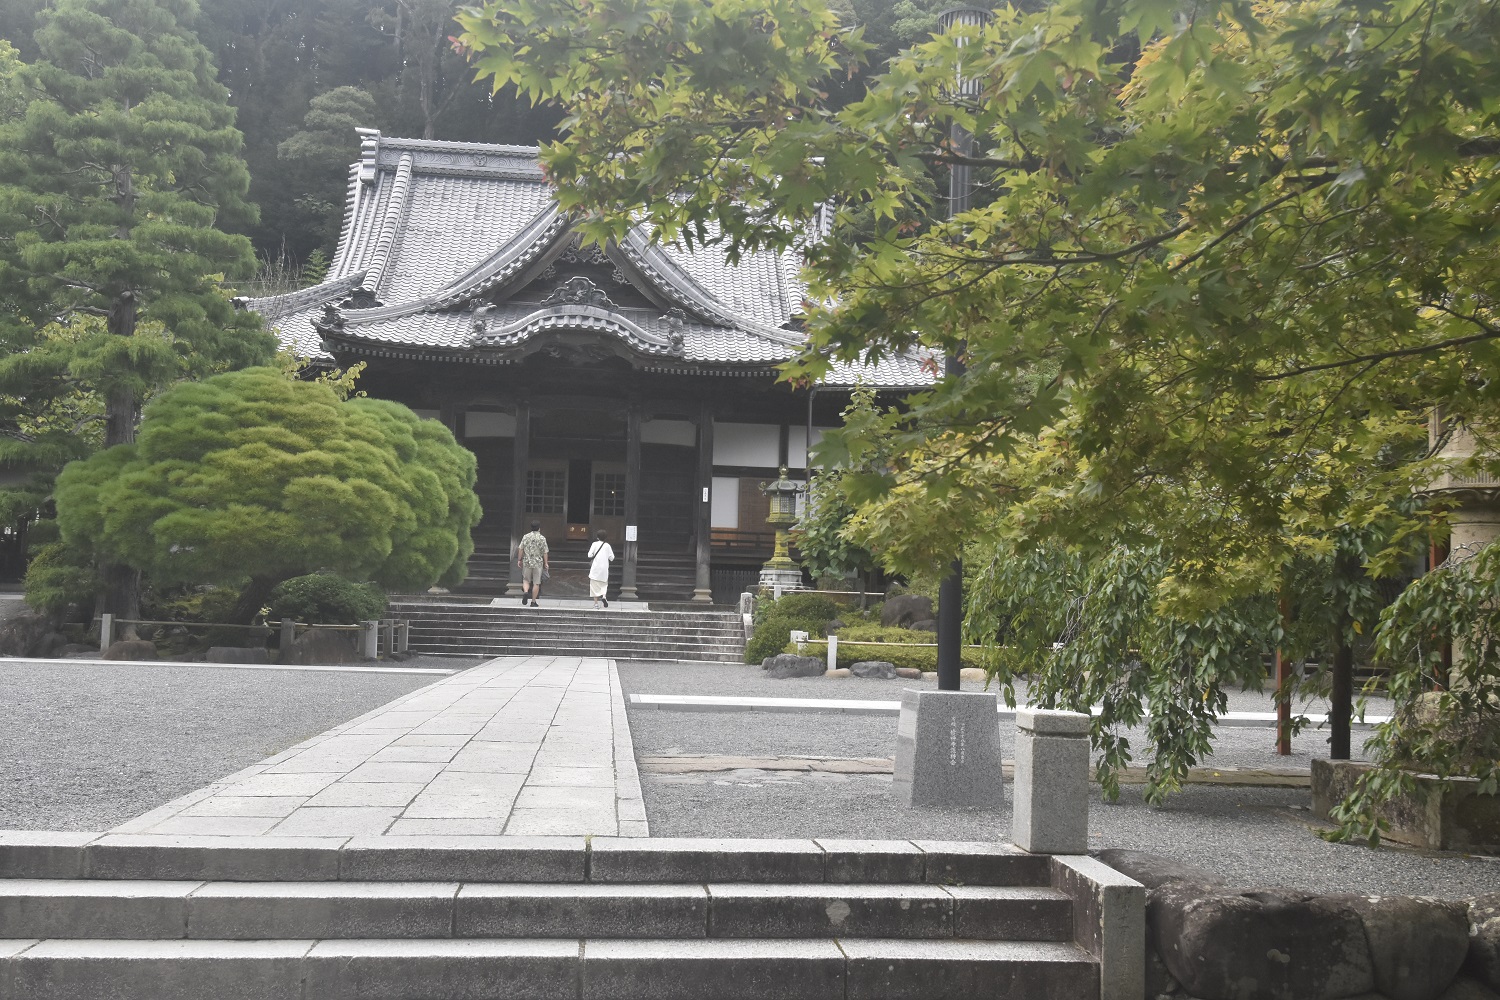 弘法大師空海によって開かれたと伝わる伊豆屈指の名刹・修禅寺。